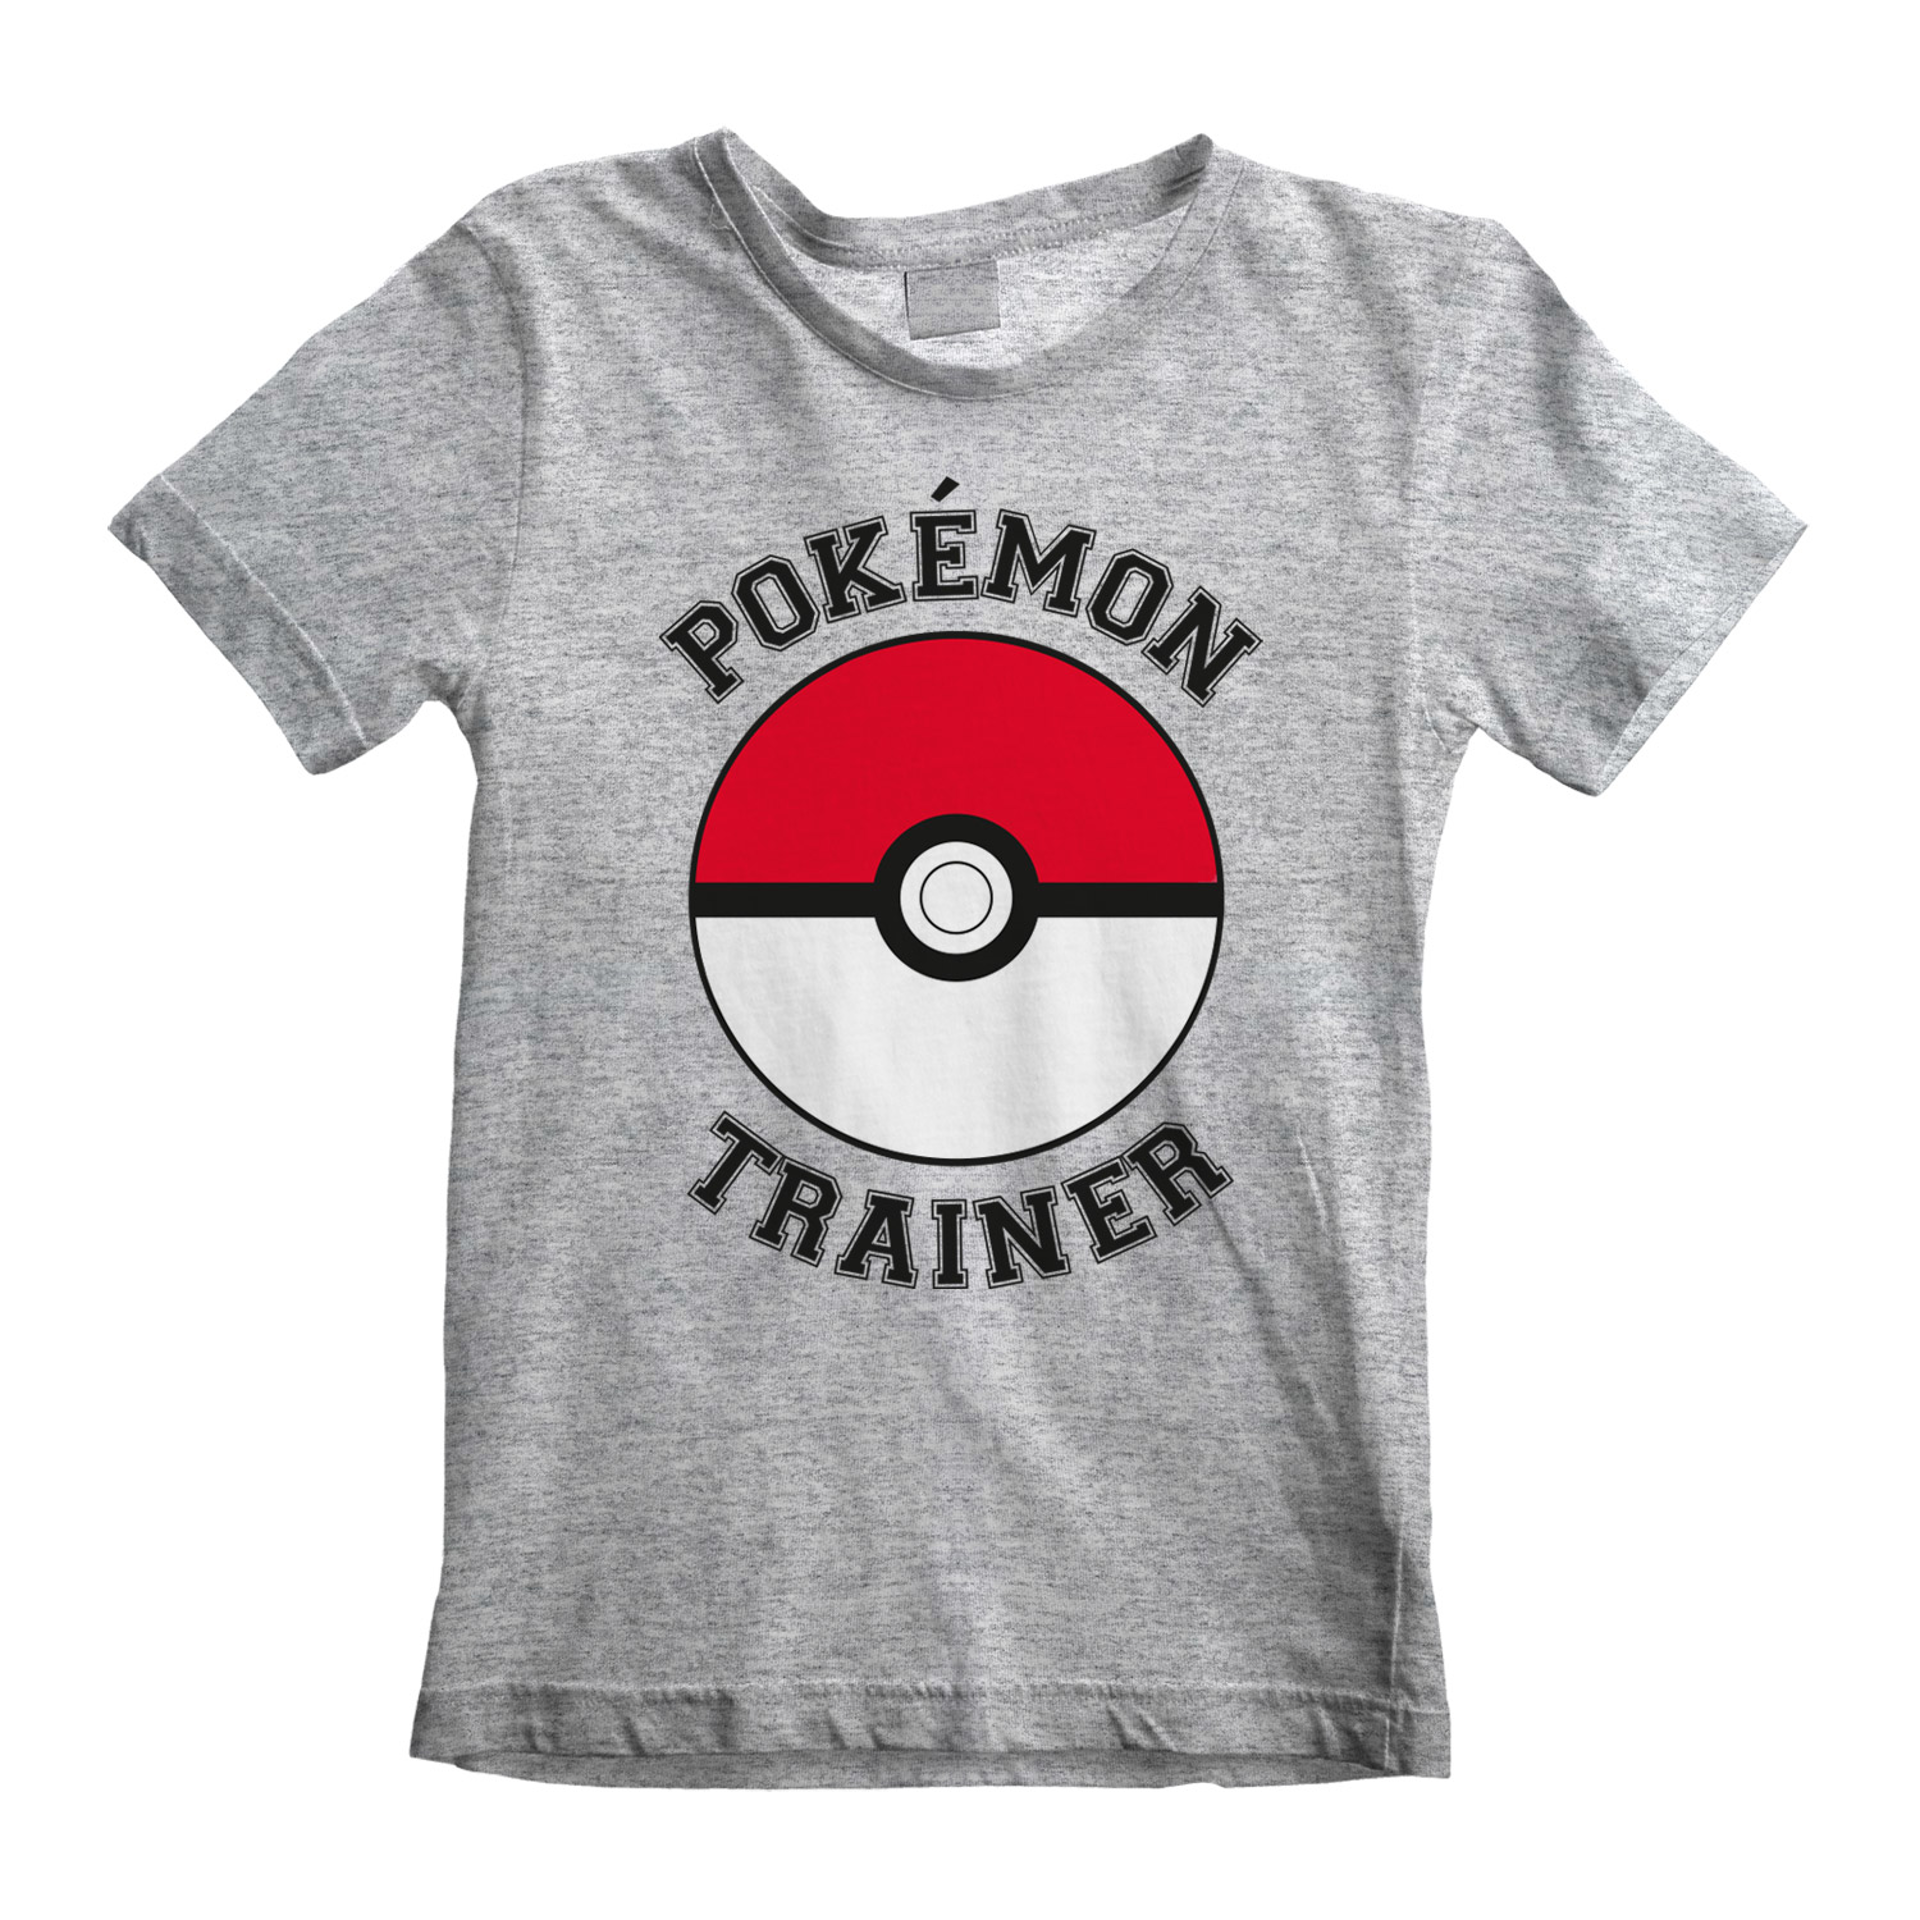 Nintendo - T-shirt Enfant Gris chiné Pokémon Entraîneur - 9-11 ans